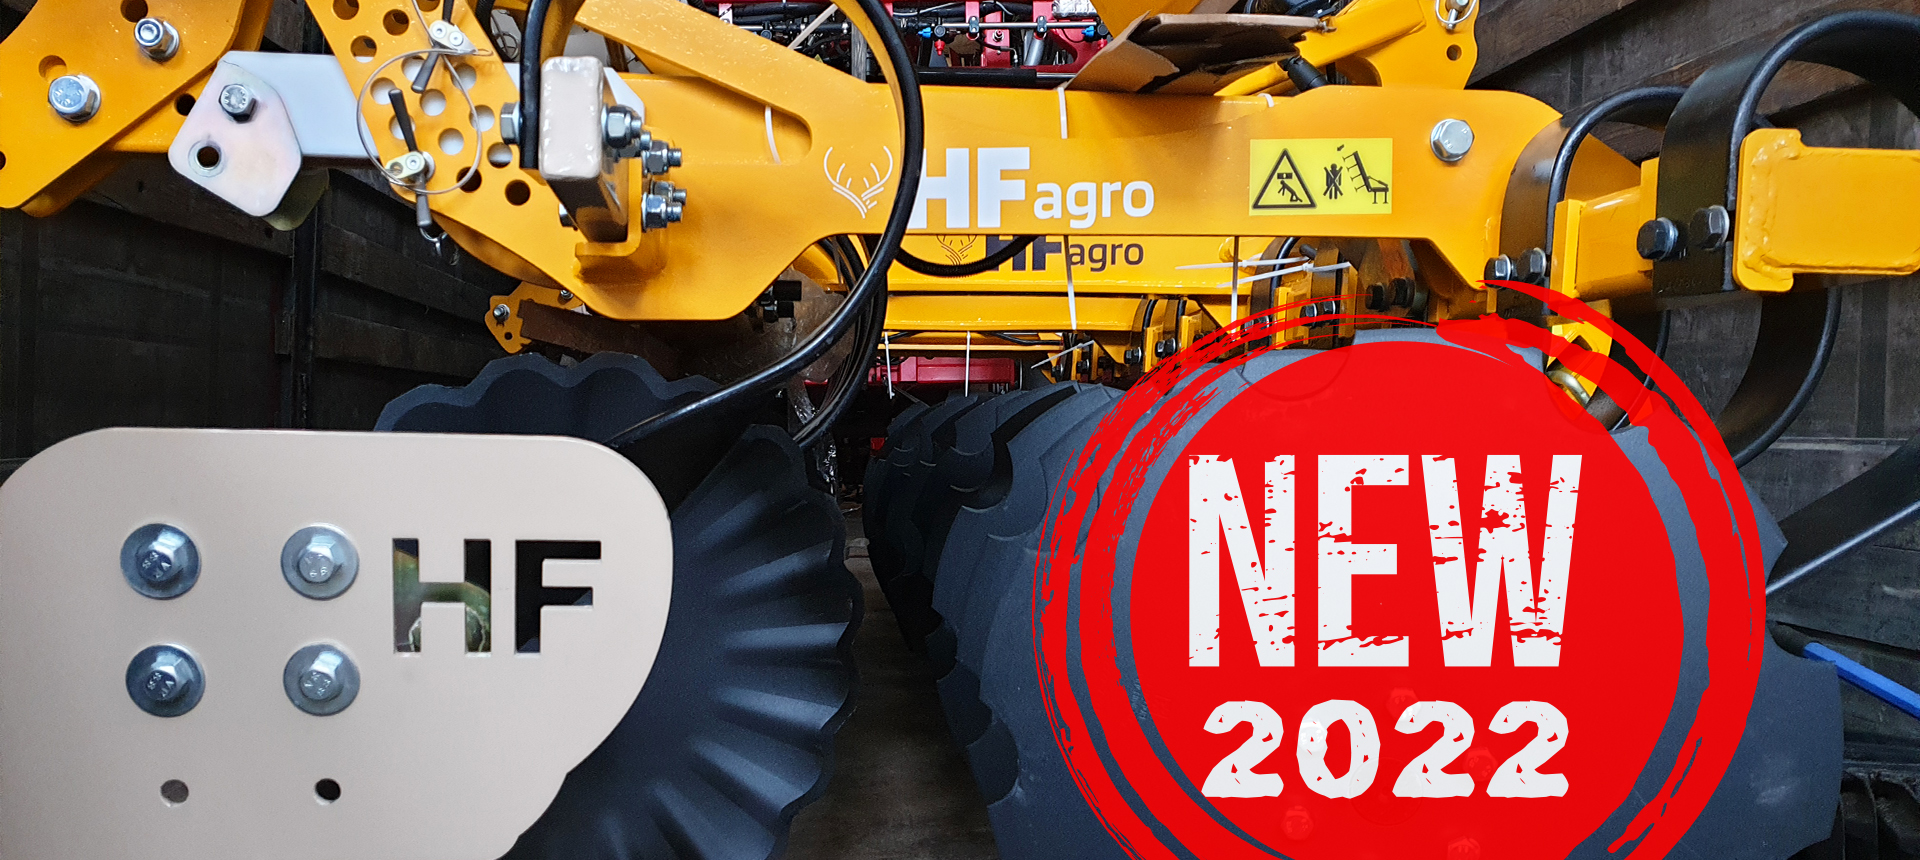 Роман Гіршфельд: про стрімкий розвиток бренду HF Agro, нову лінійку та участь у виставці «АгроВесна. Зернові технології-2022»